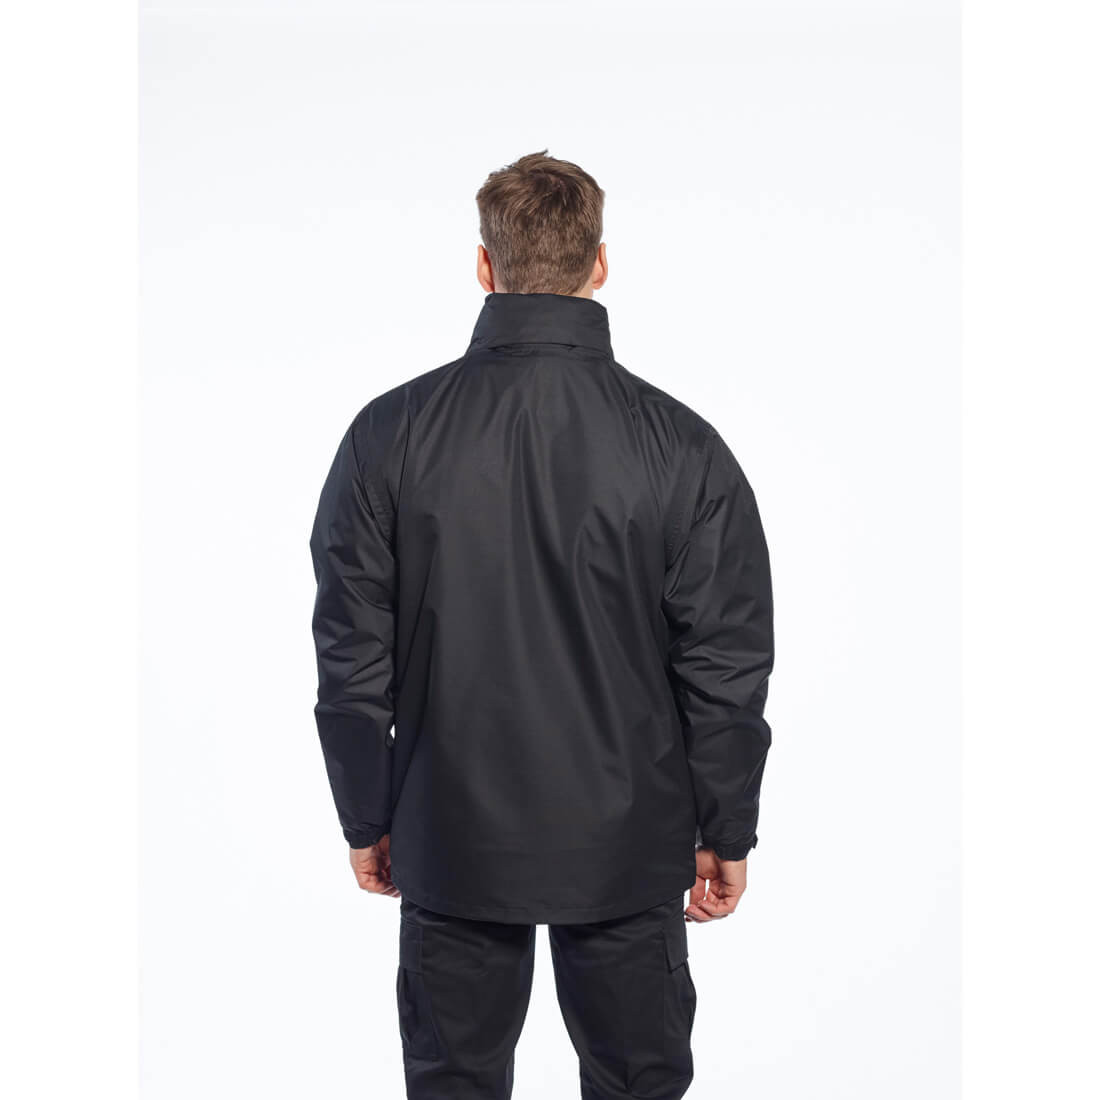 Argo 3 in 1 Jacket - Safetywear